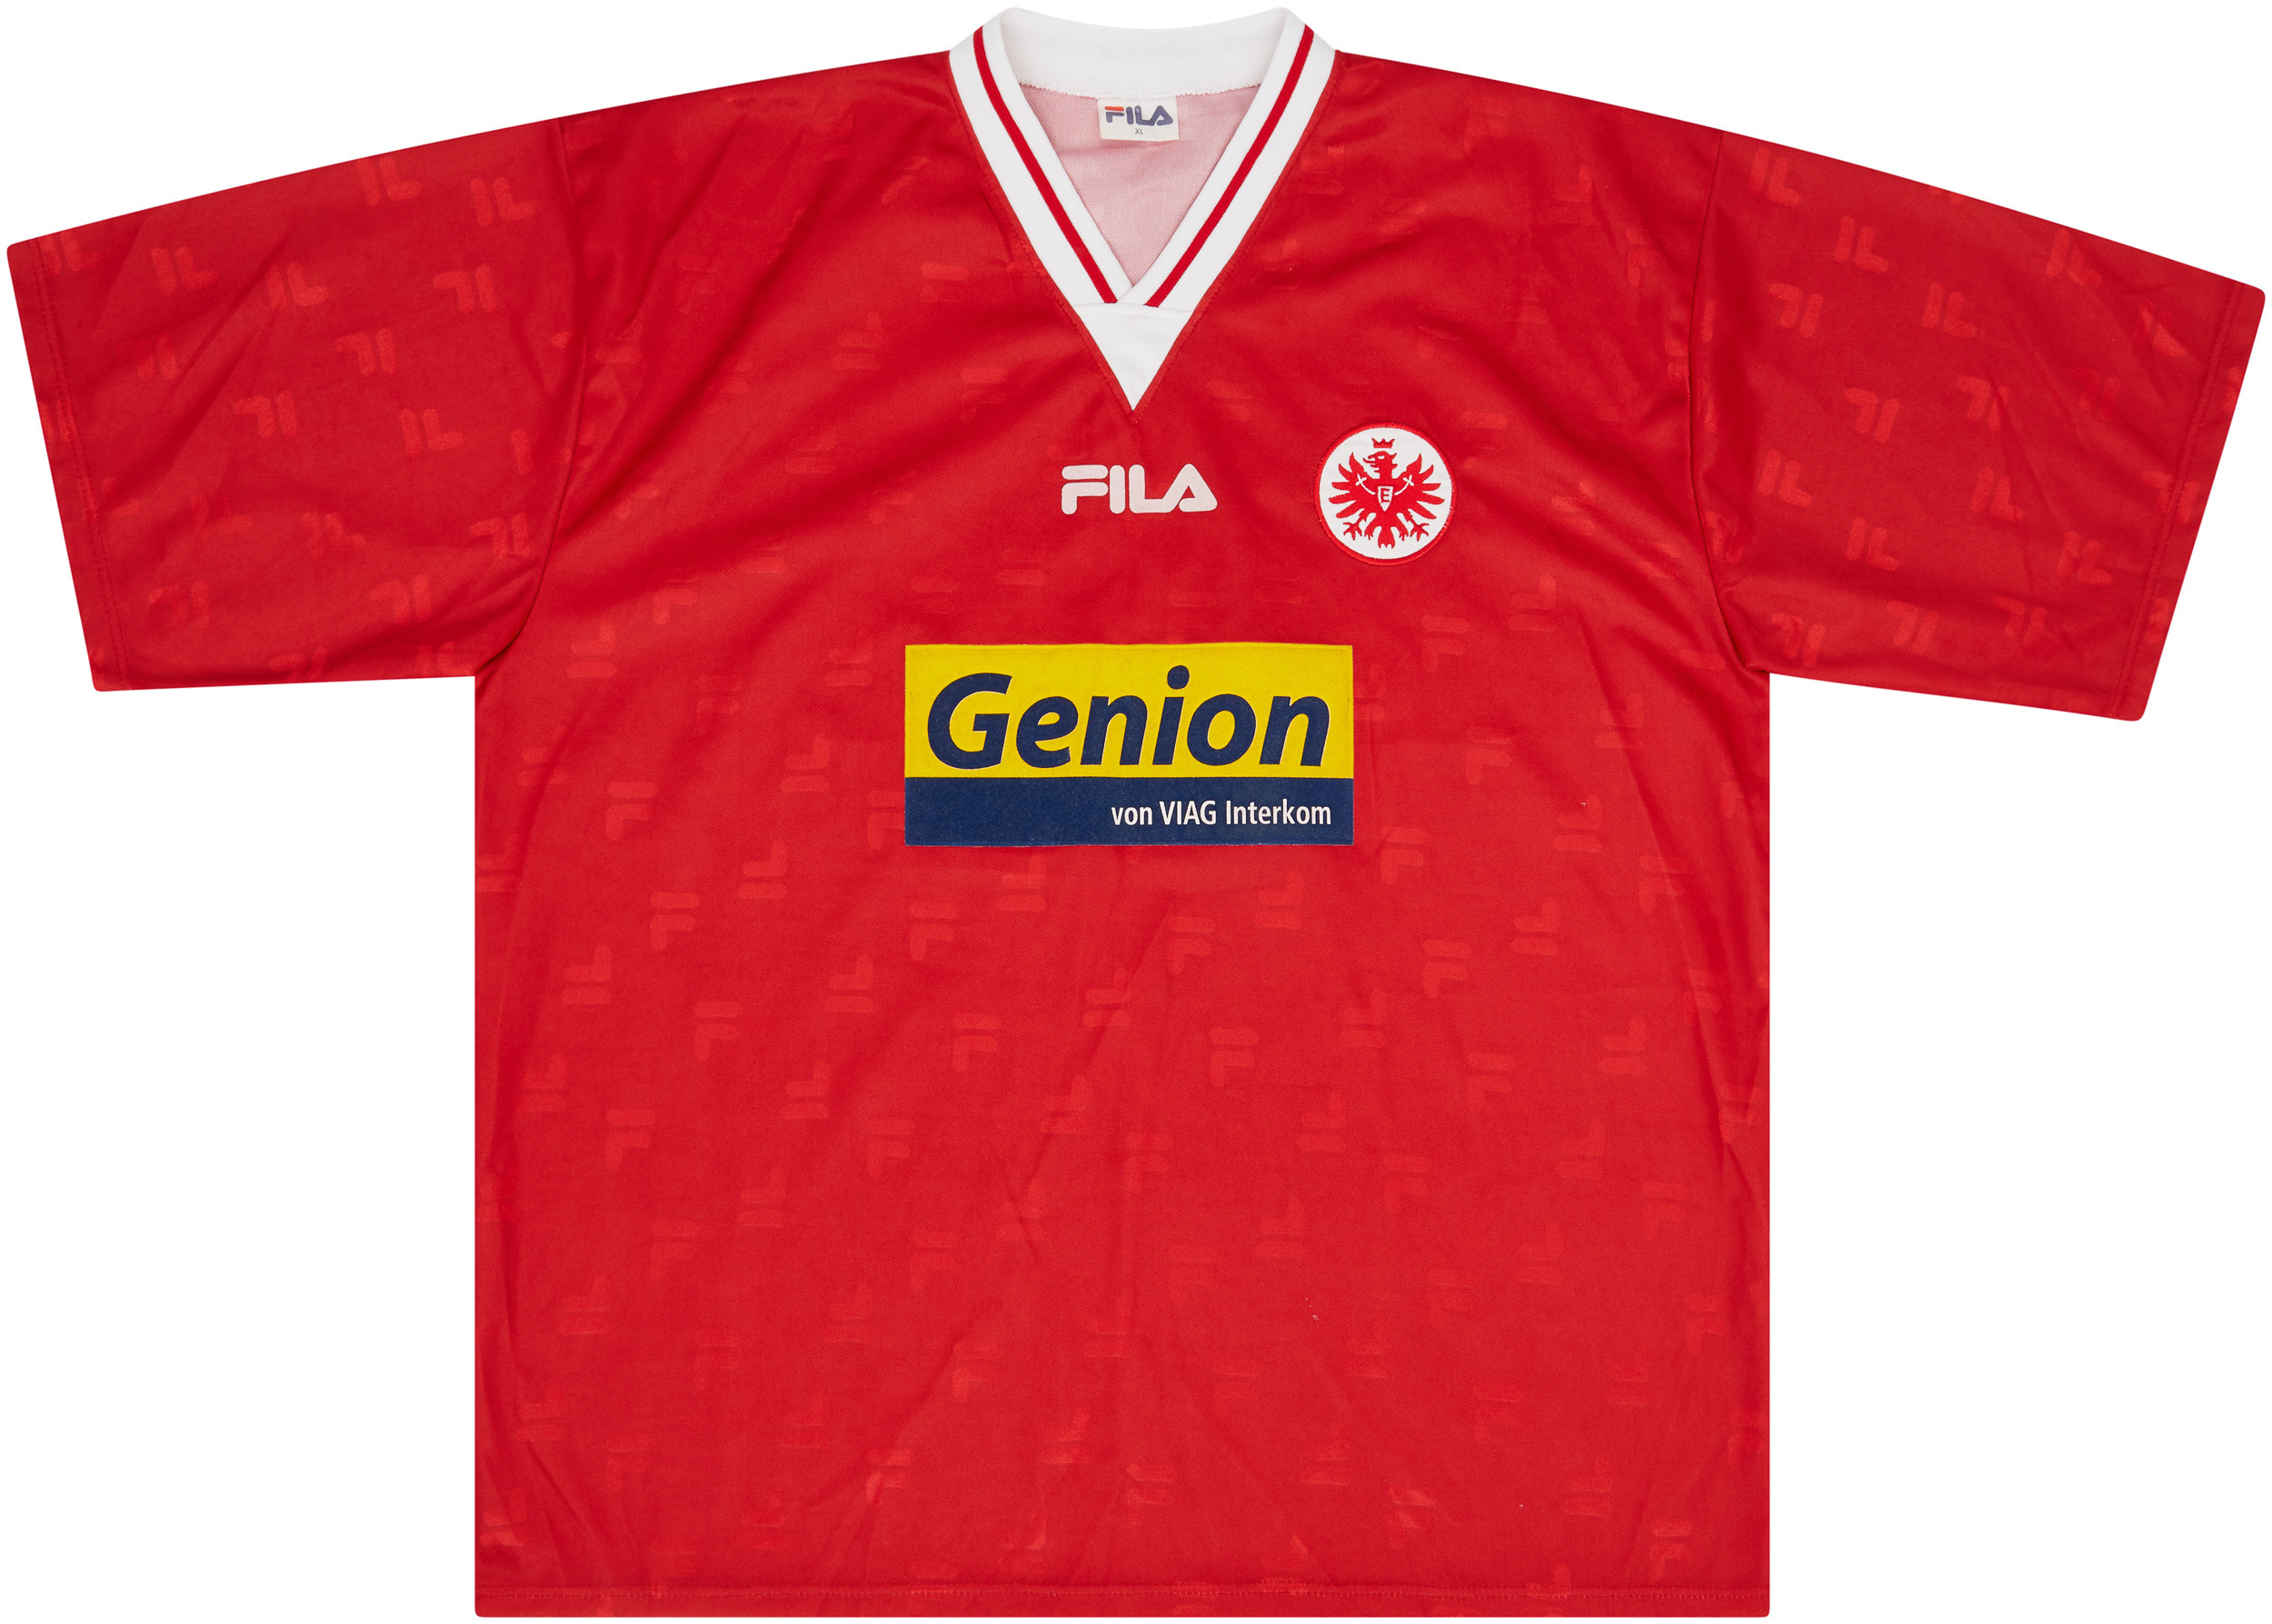 Eintracht Frankfurt  home camisa (Original)